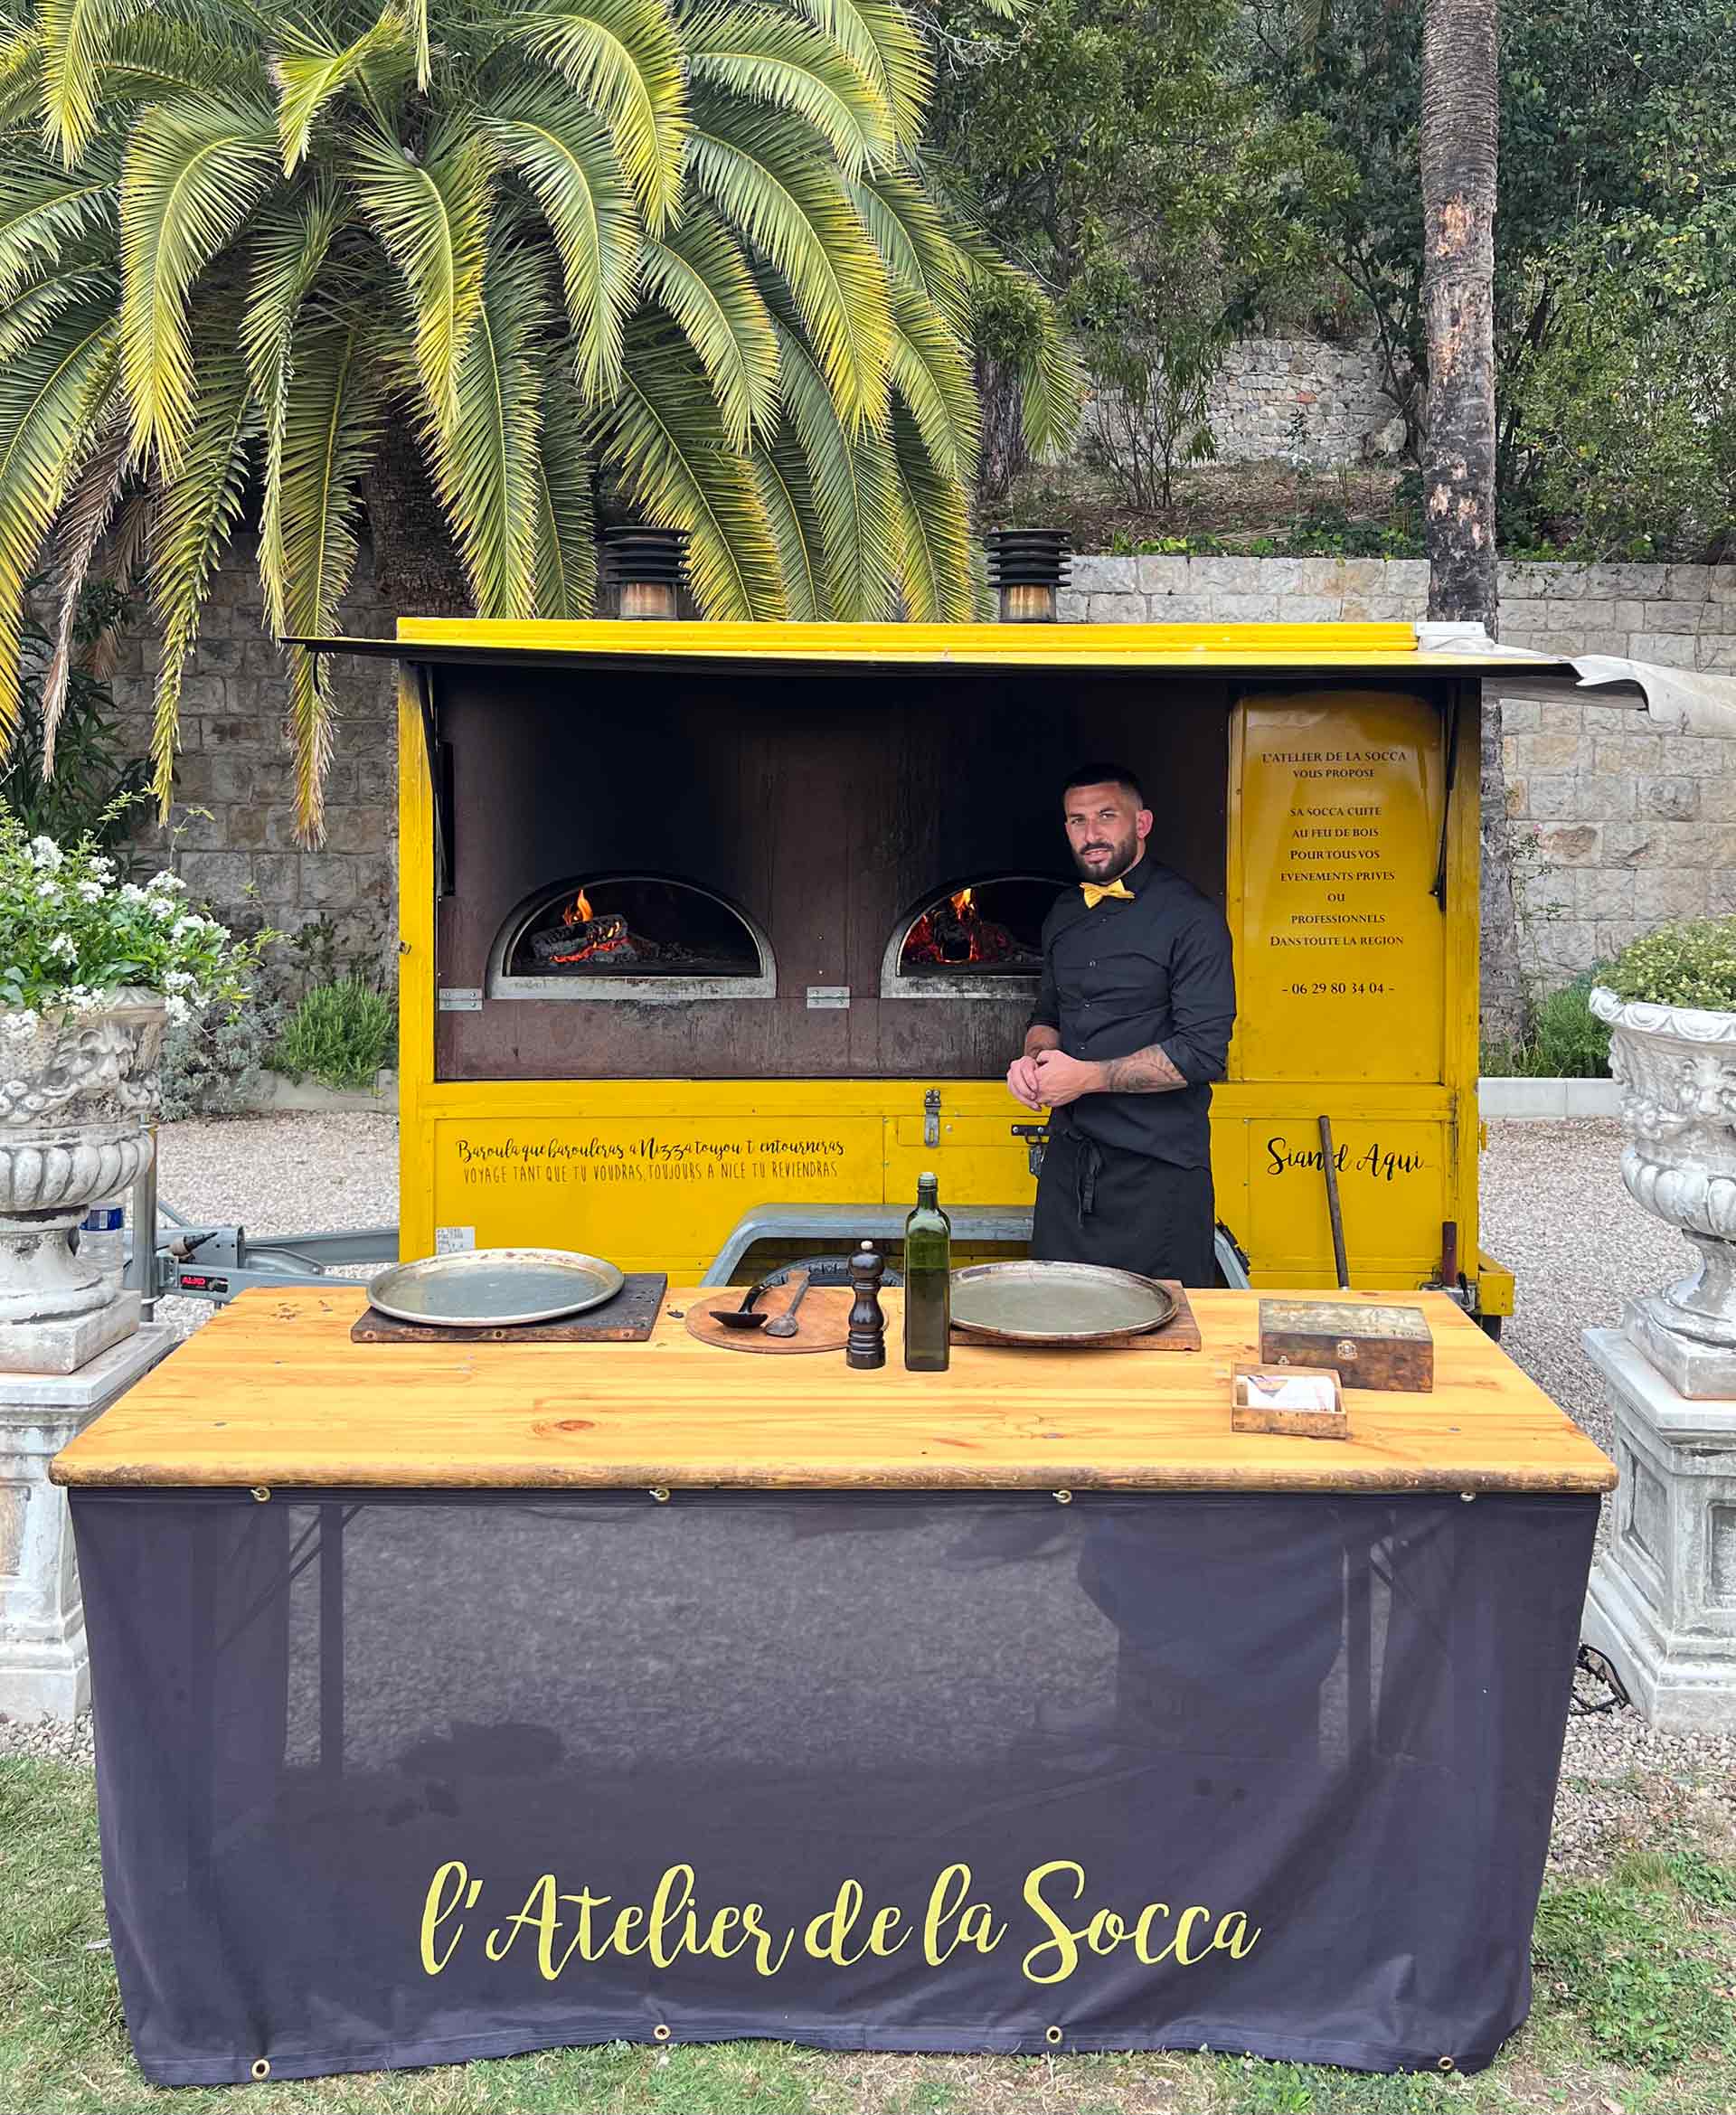 Notre food truck à bois privatisé au coeur des jardins du château saint-Georges à Grasse.